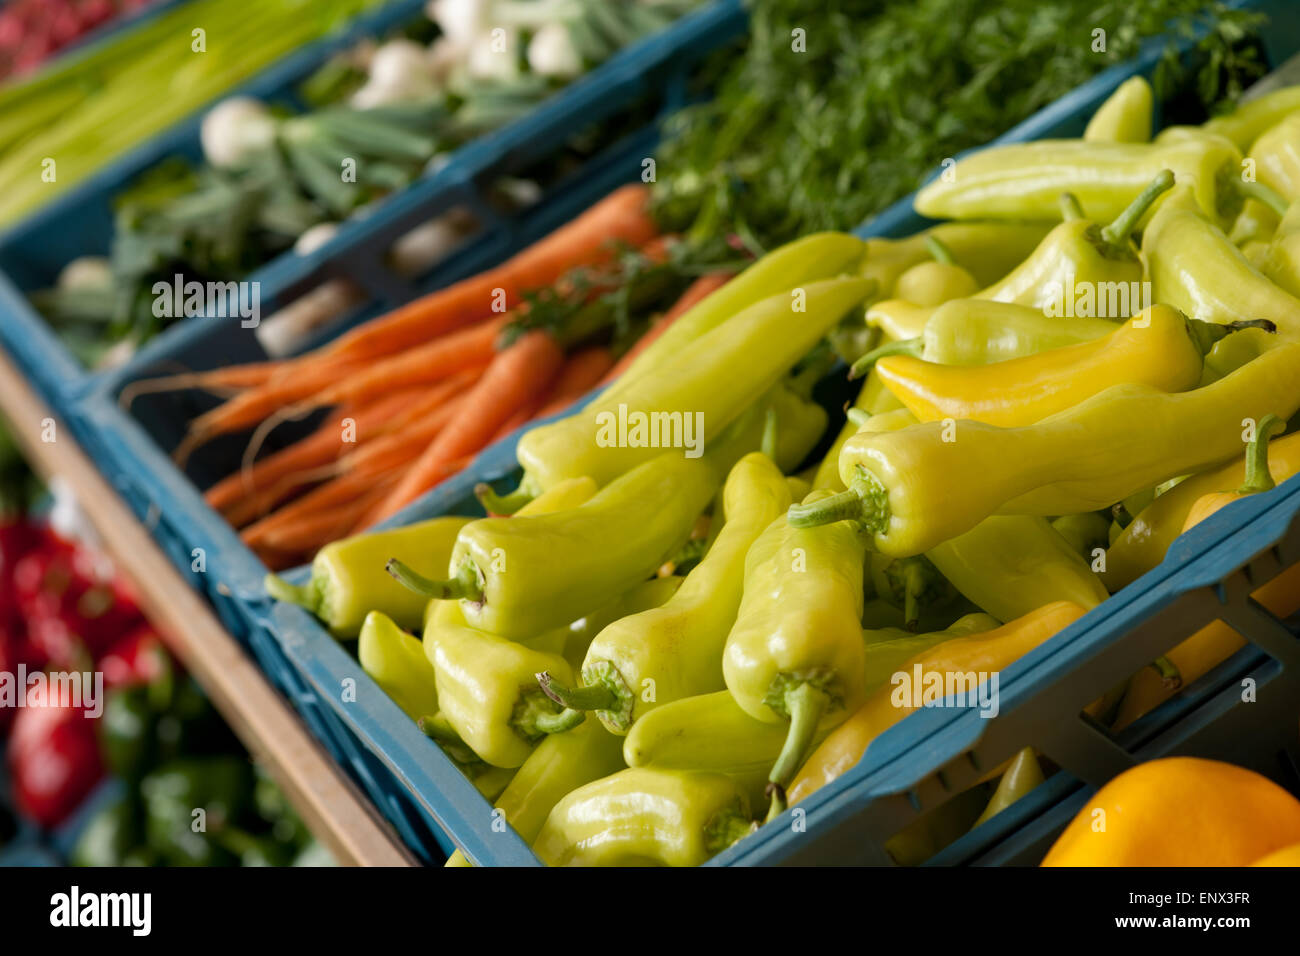 Compras - Tienda de comestibles cerca de verduras Foto de stock